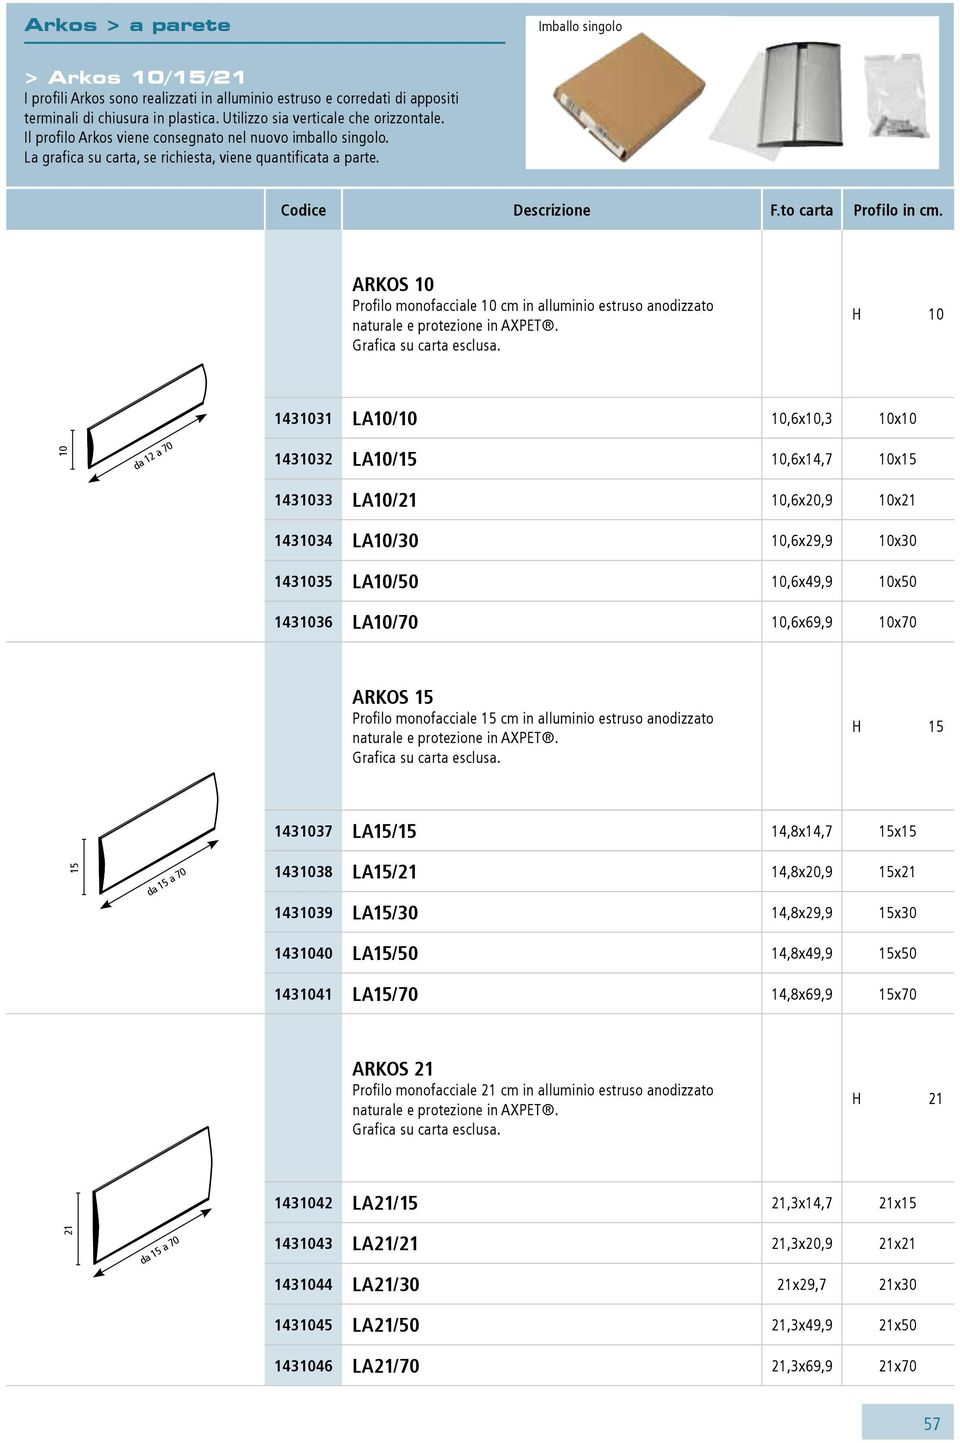 Arkos 10 Profilo monofacciale 10 cm in alluminio estruso anodizzato naturale e protezione in AXPET. Grafica su carta esclusa.